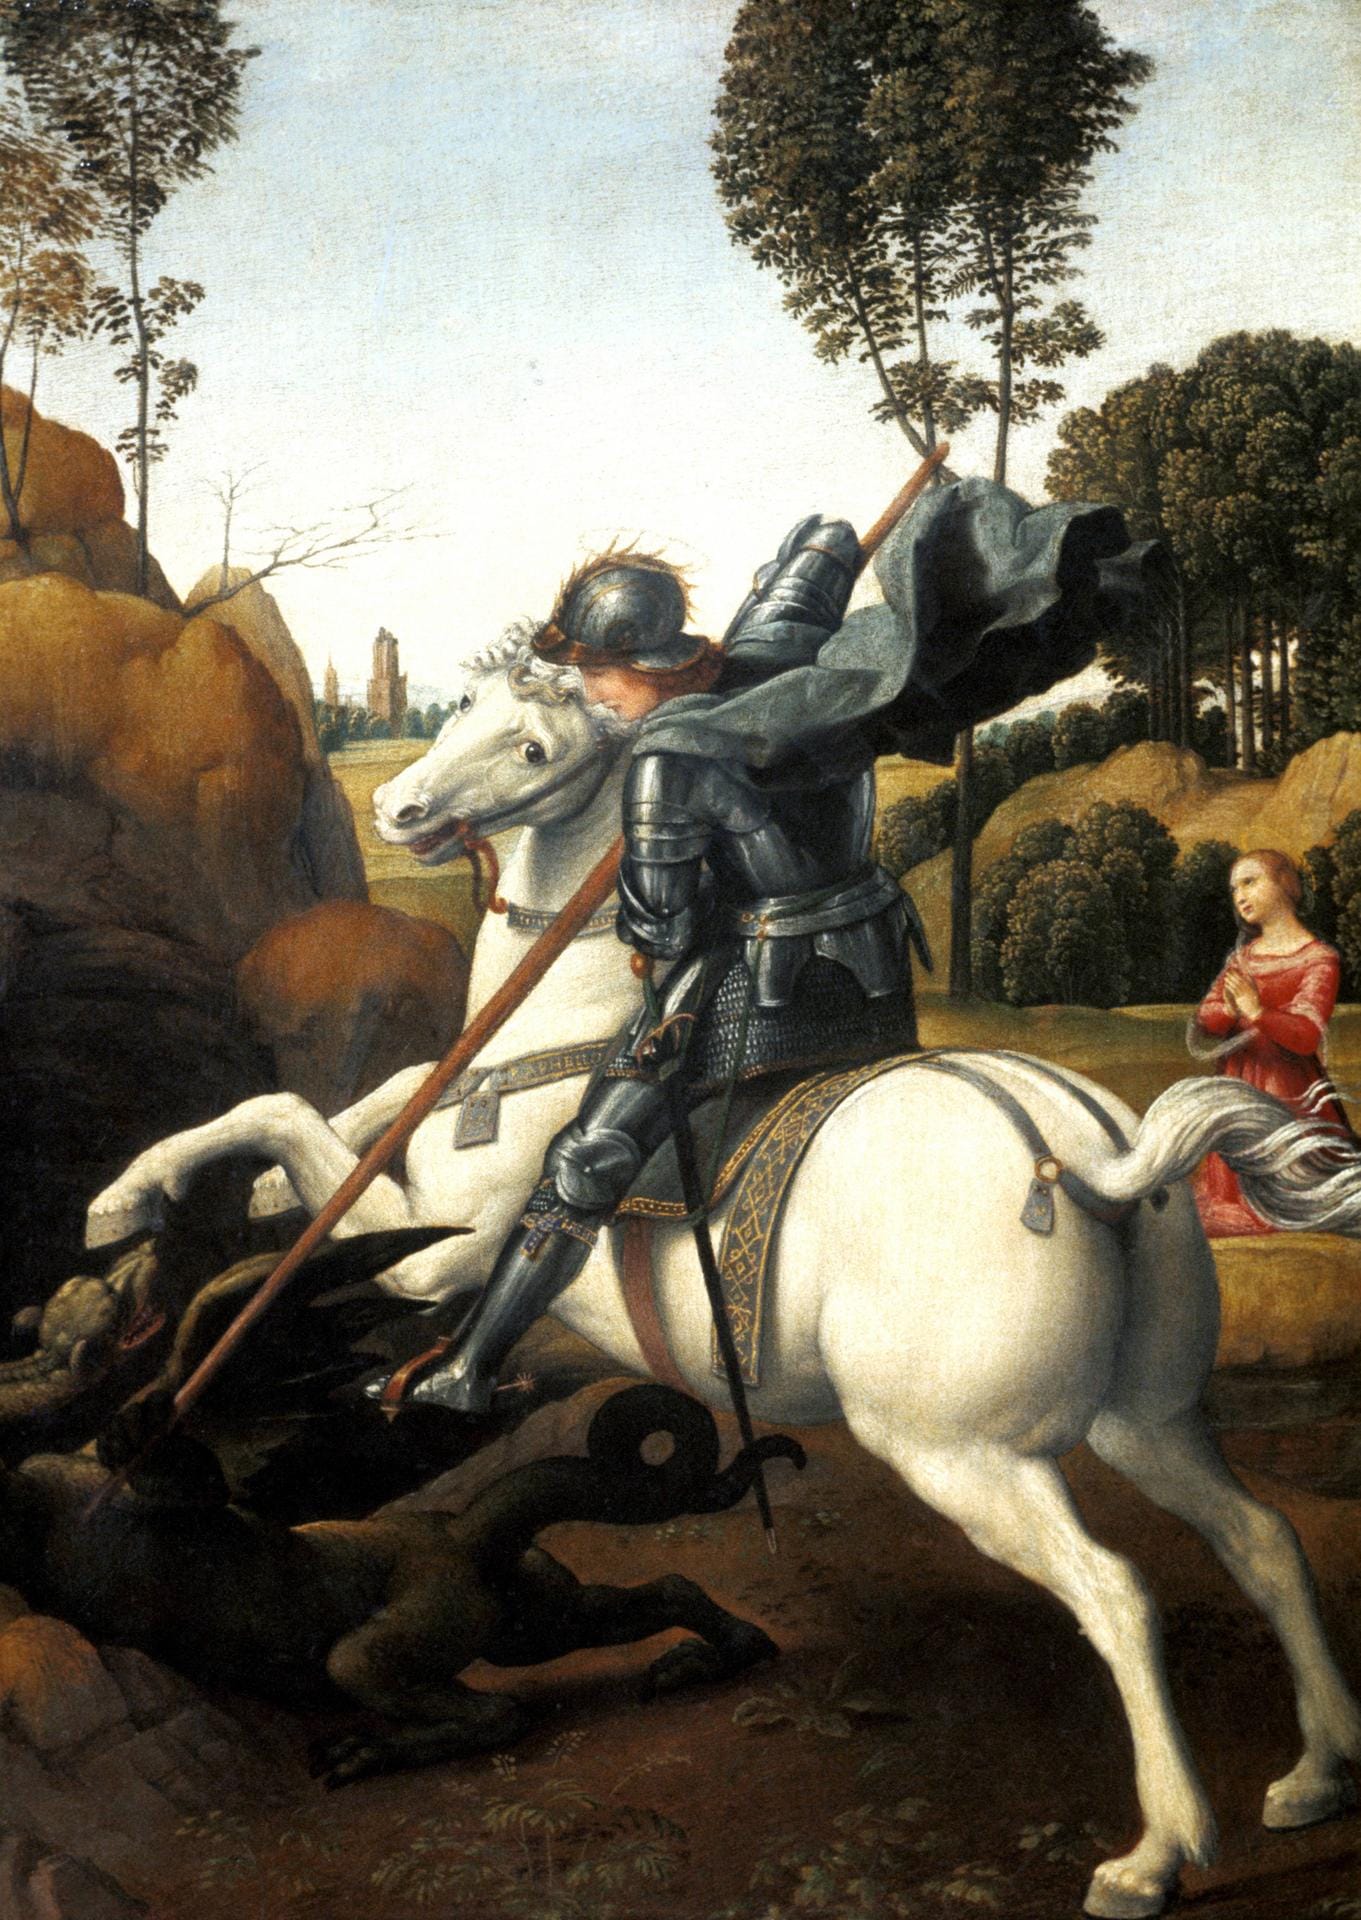 Der hl. Georg im Kampf mit dem Drachen, 1504 - 1506, 28,5 x 21,5 cm, Öl auf Holz, National Gallery of Art, Washington, D.C.